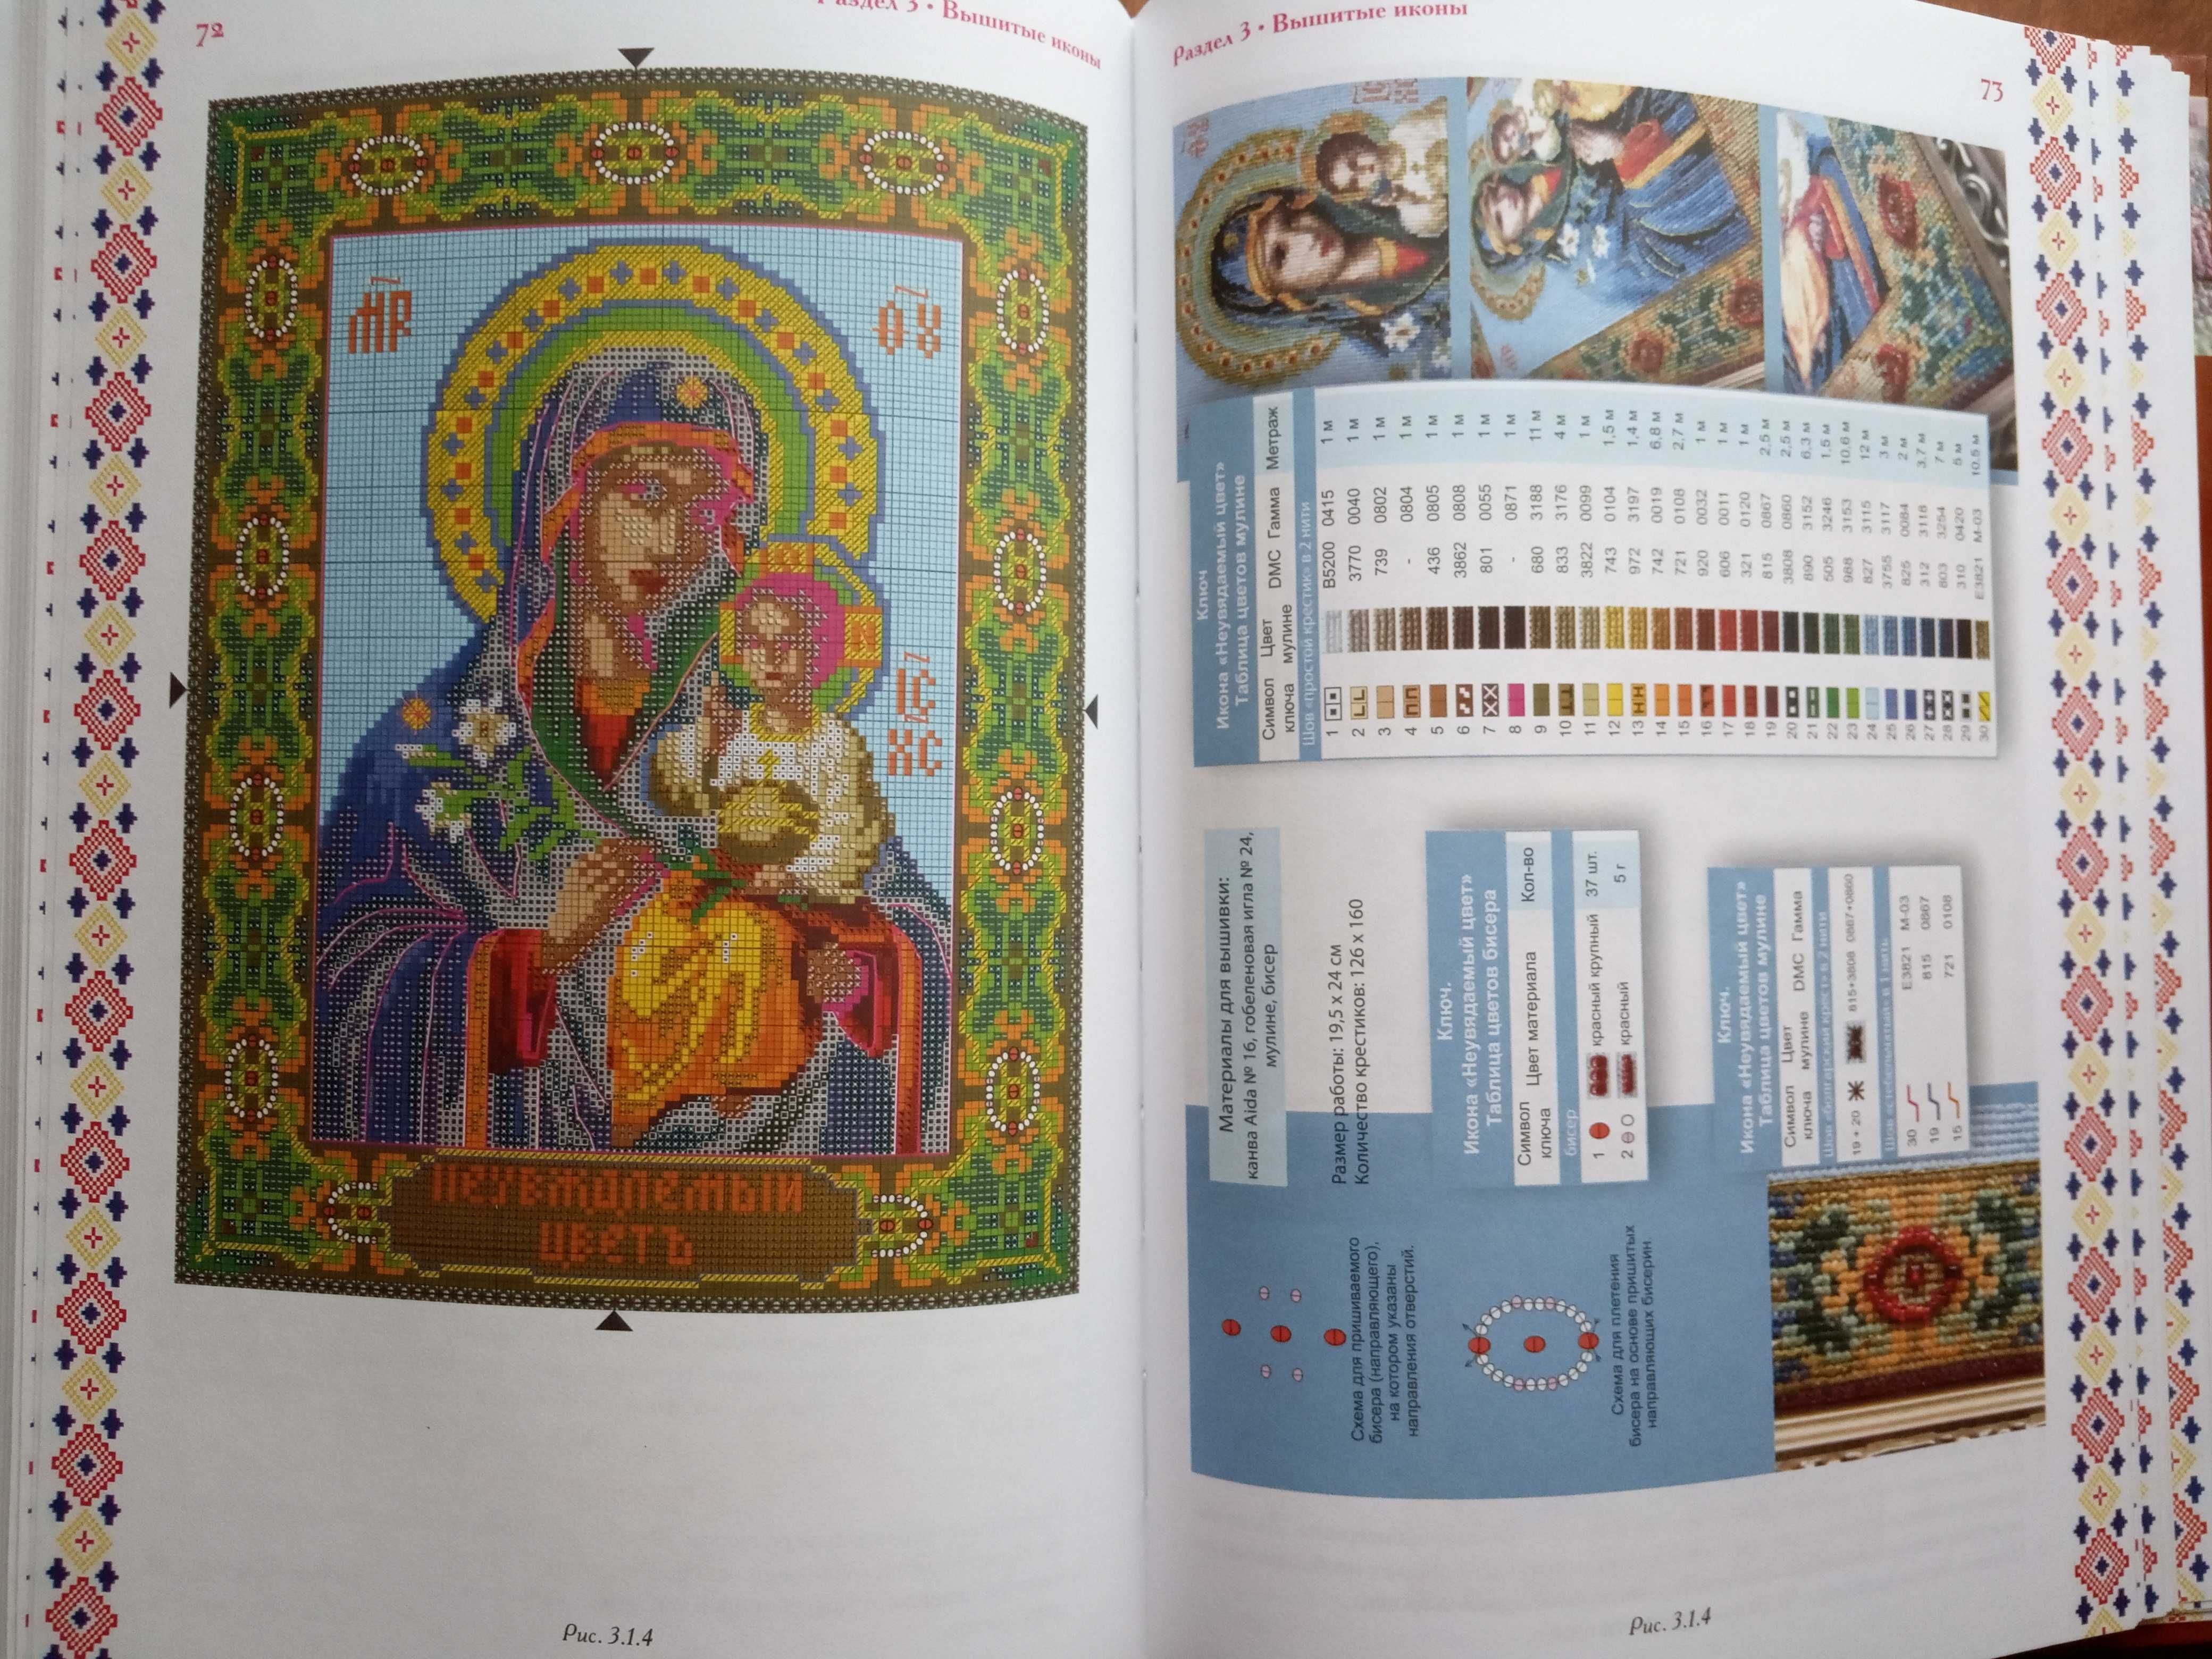 Книга "Иконы Рушники Картины" вышивка нитью и бисером